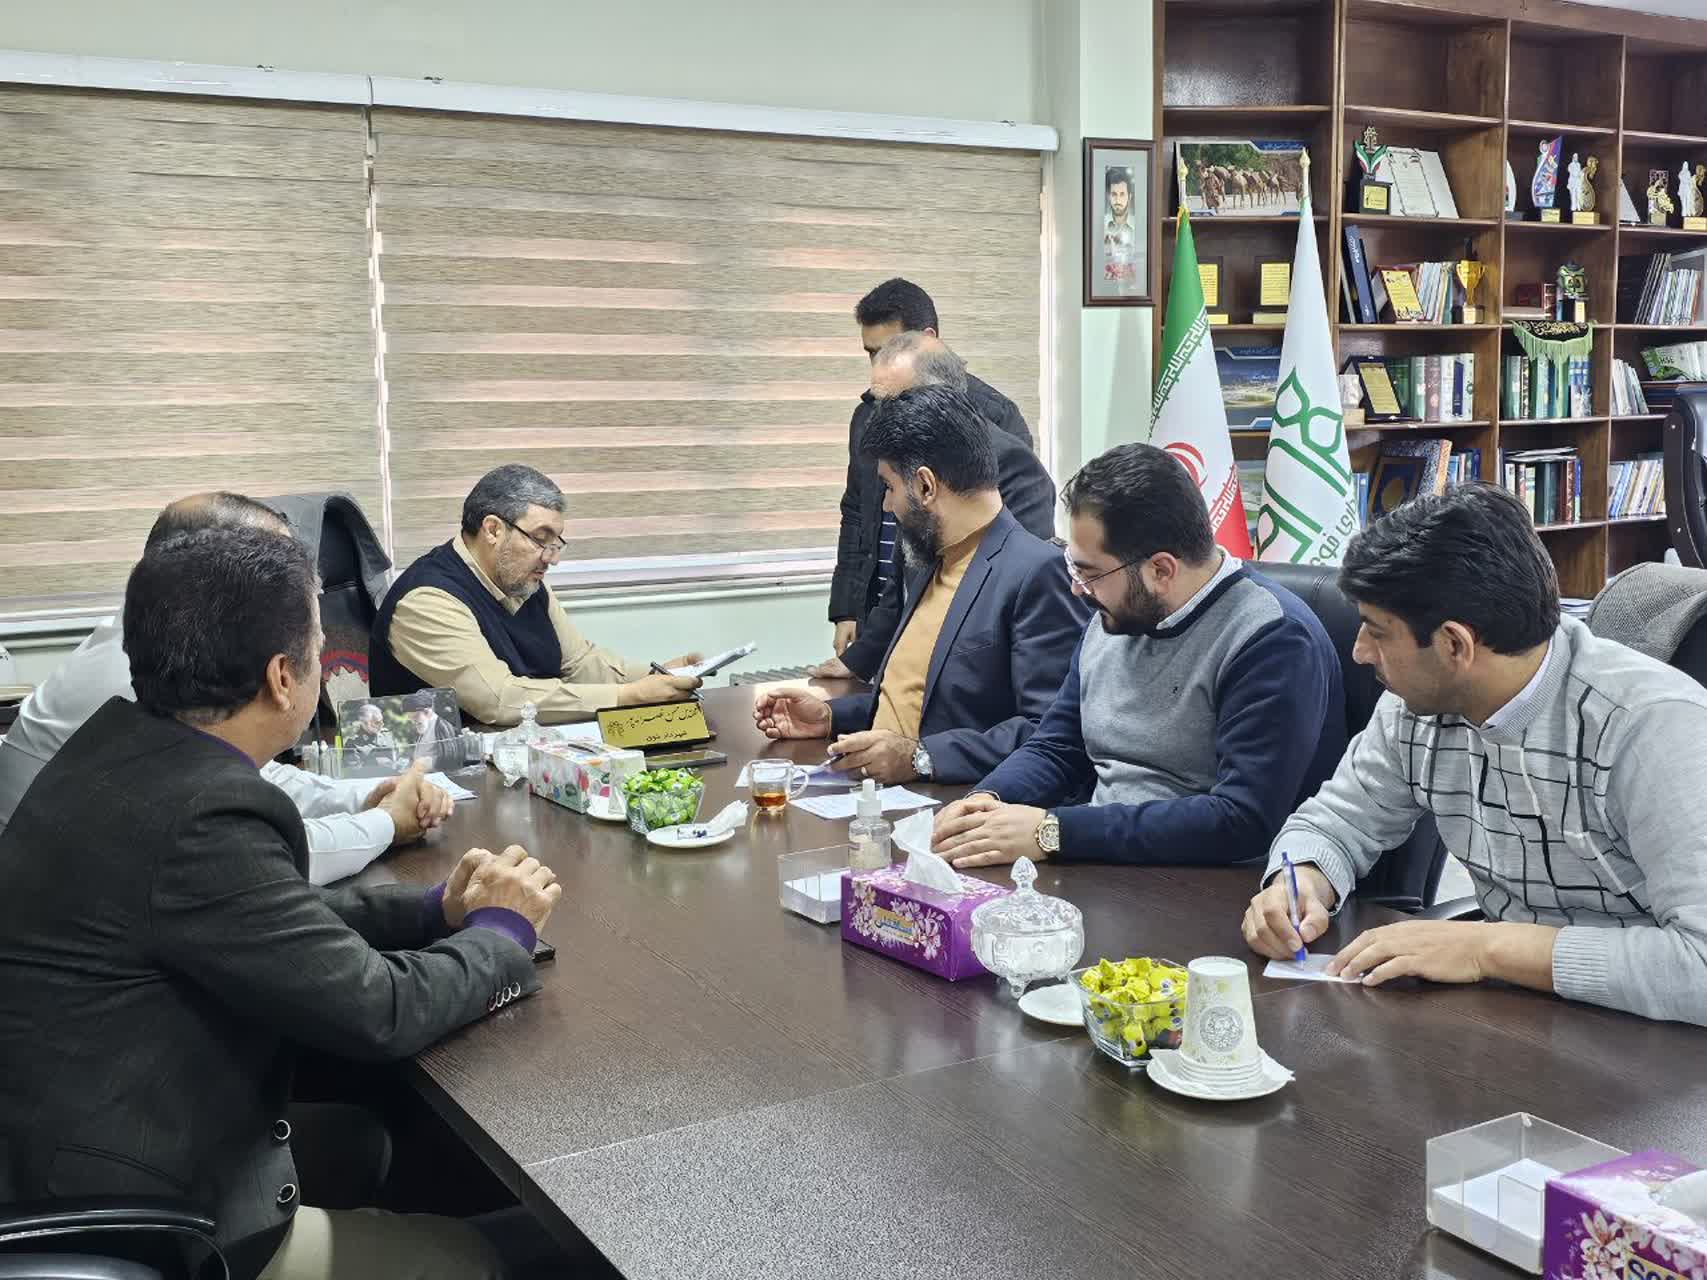 برگزاری ملاقات مردمی شهردار خوی در روز دوشنبه